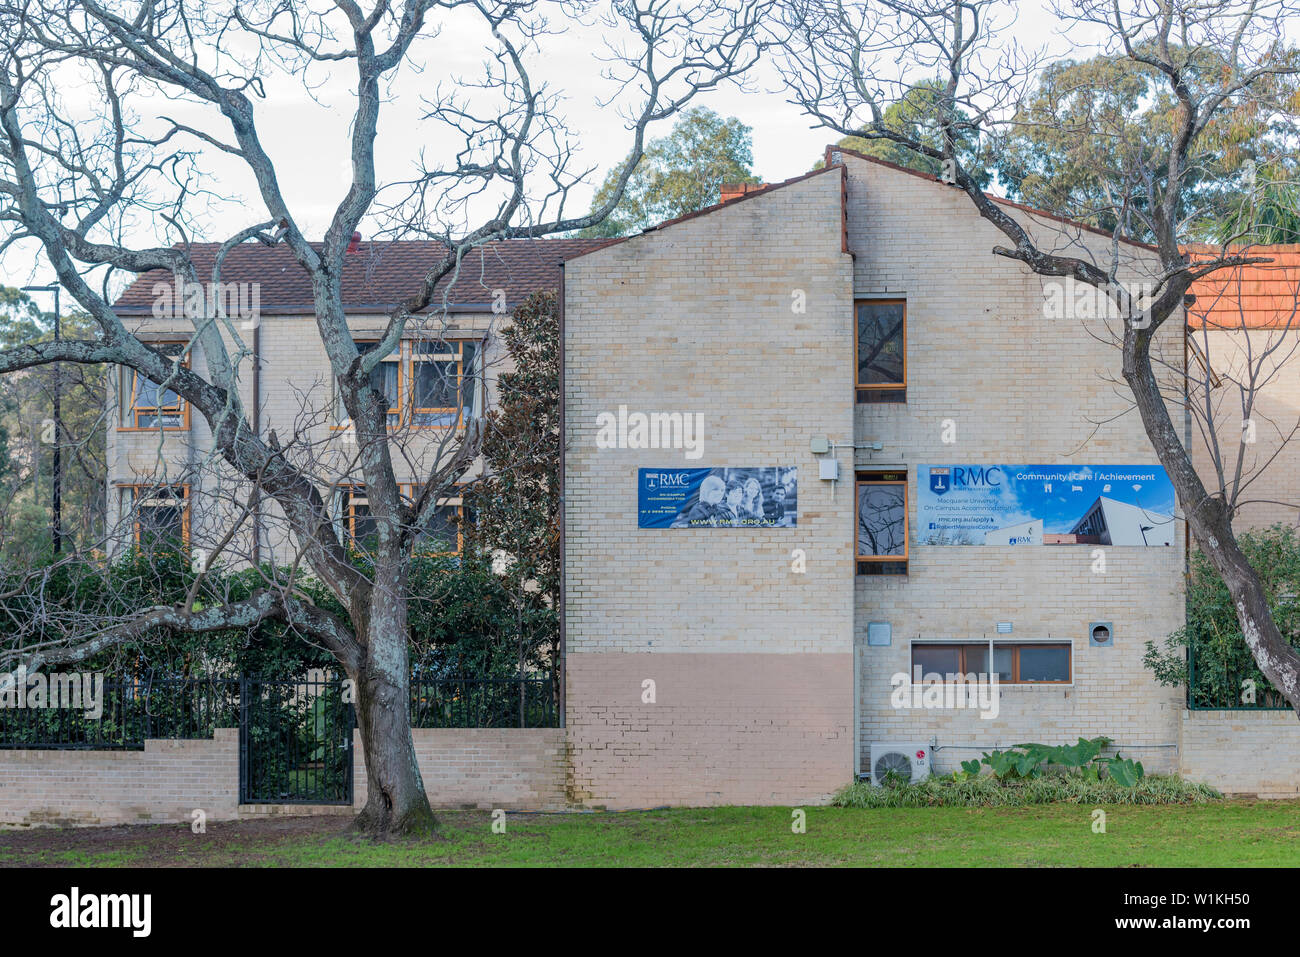 Nombrado después de que un ex Primer Ministro, Robert Menzies College es un colegio residencial anglicana de la Macquarie University, construida en 1972. Foto de stock